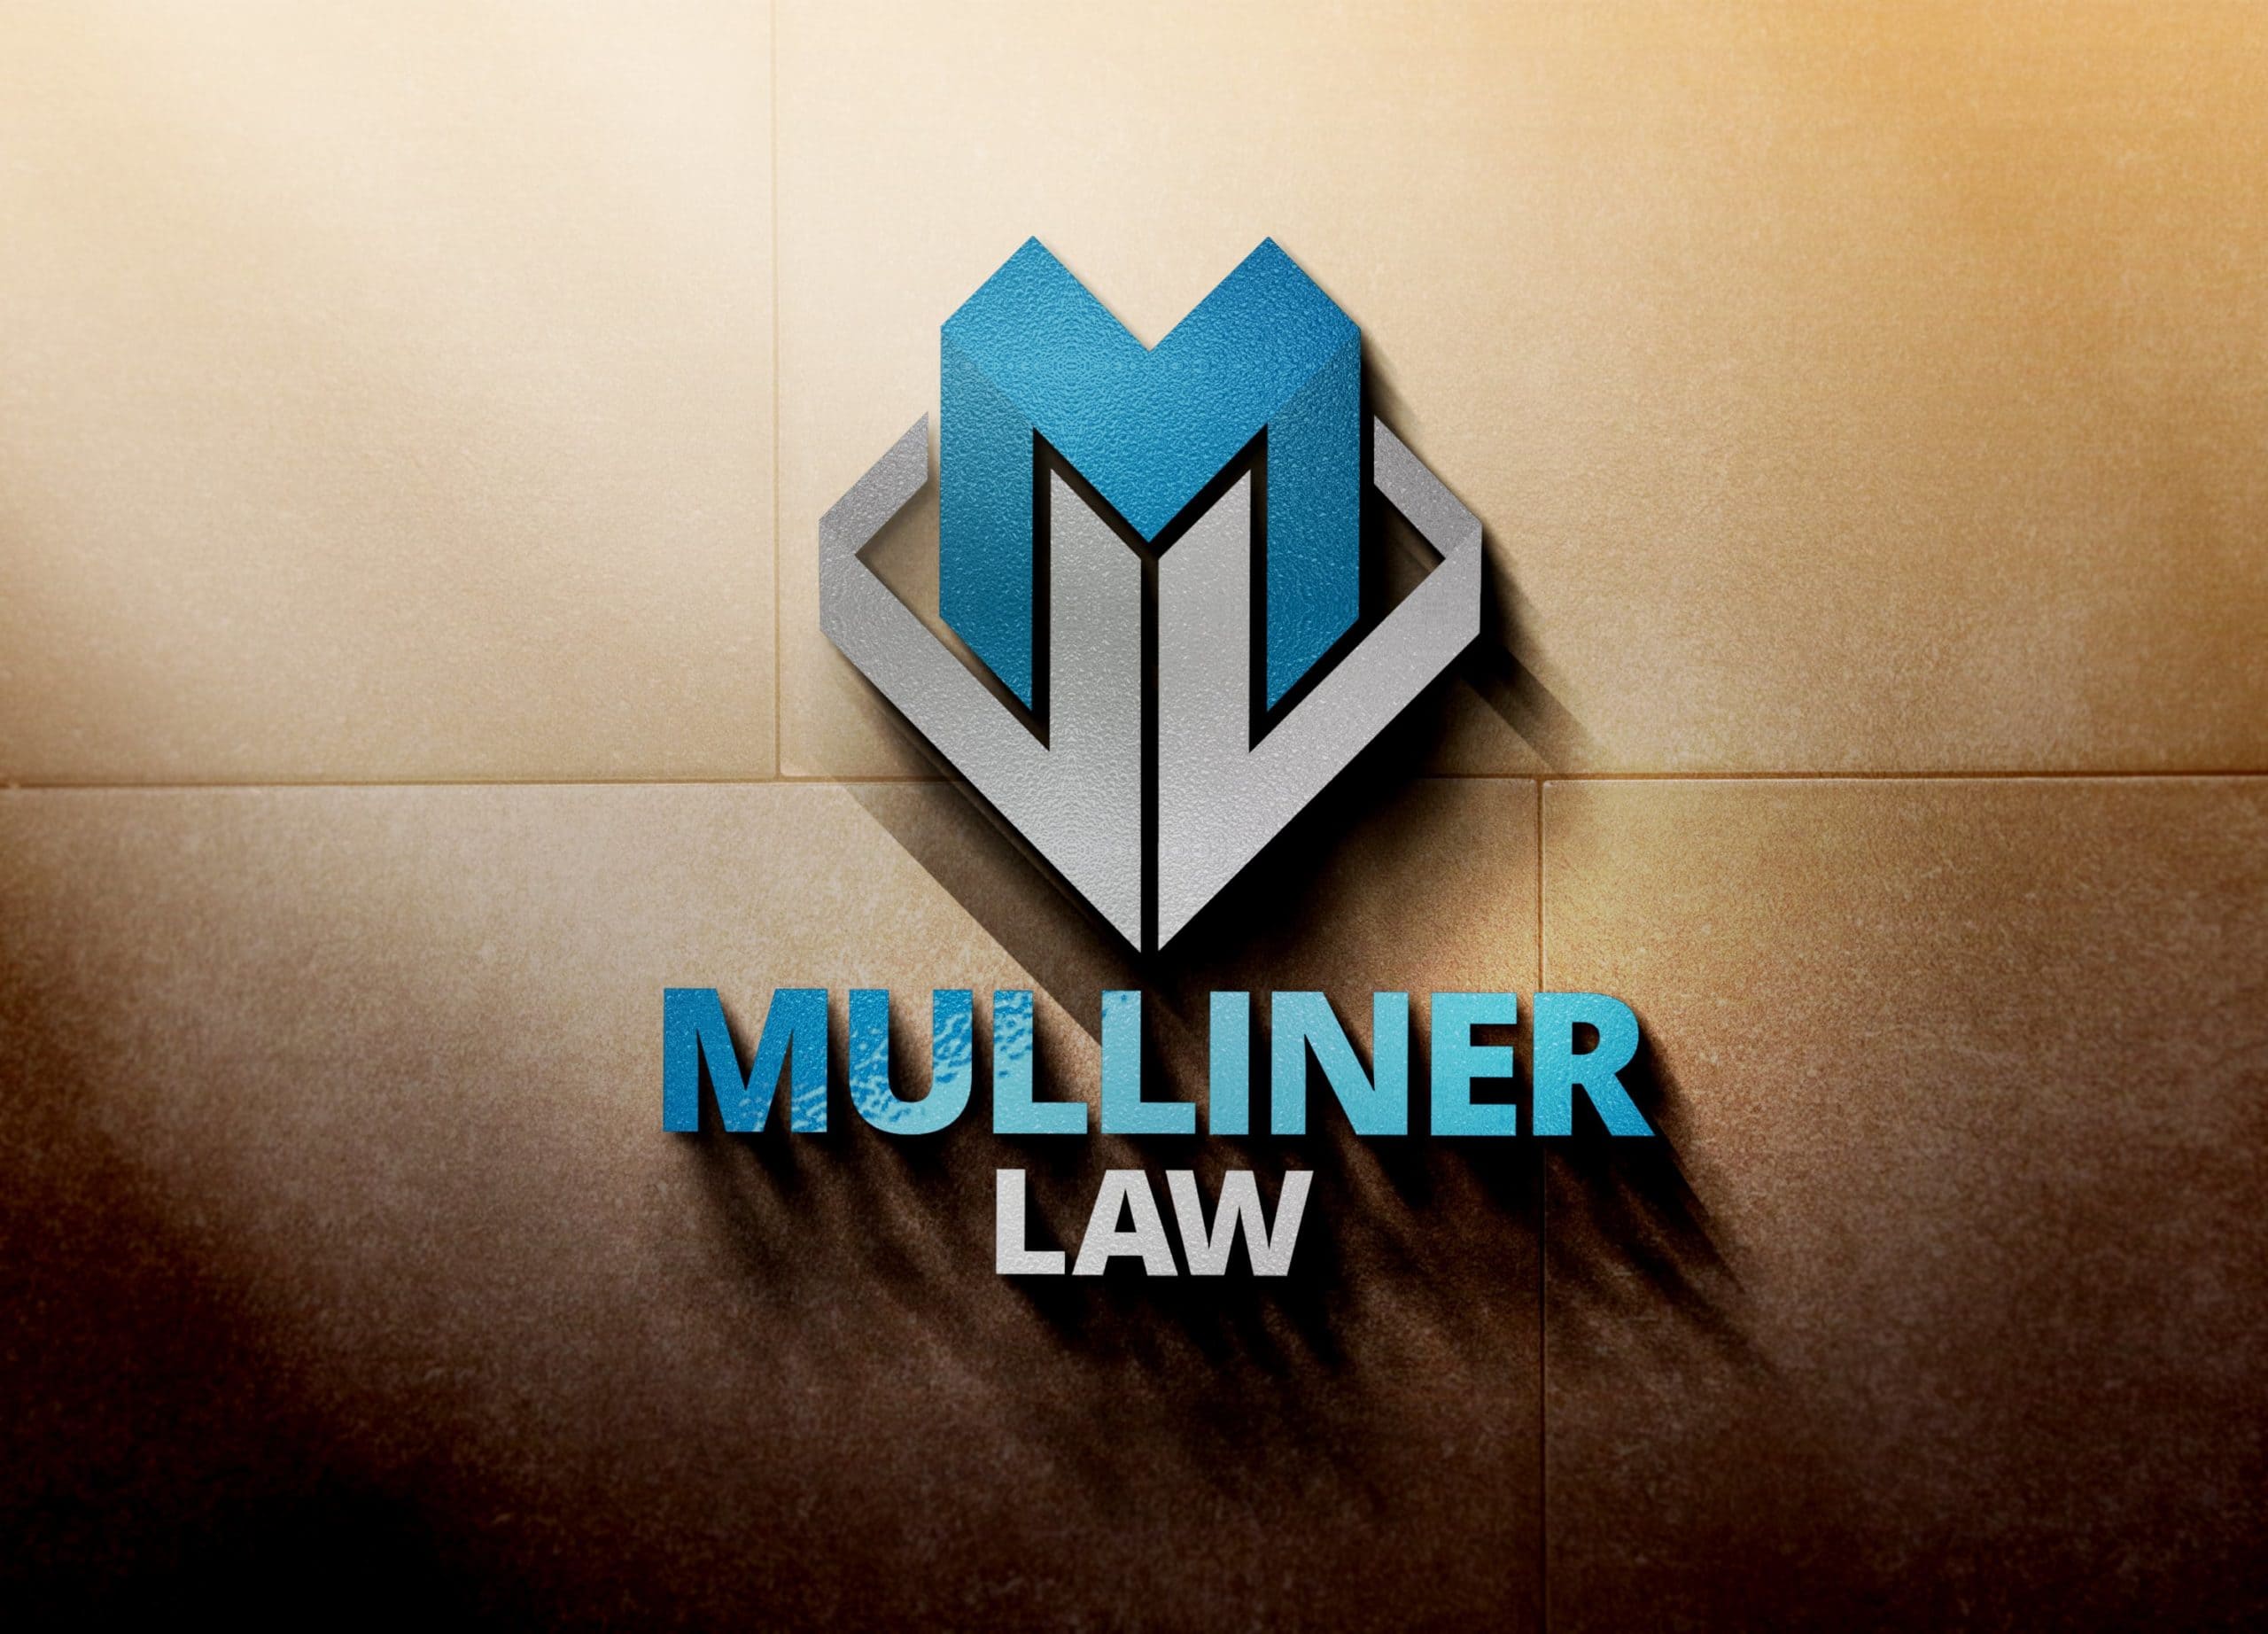 Girraphic Mulliner Law